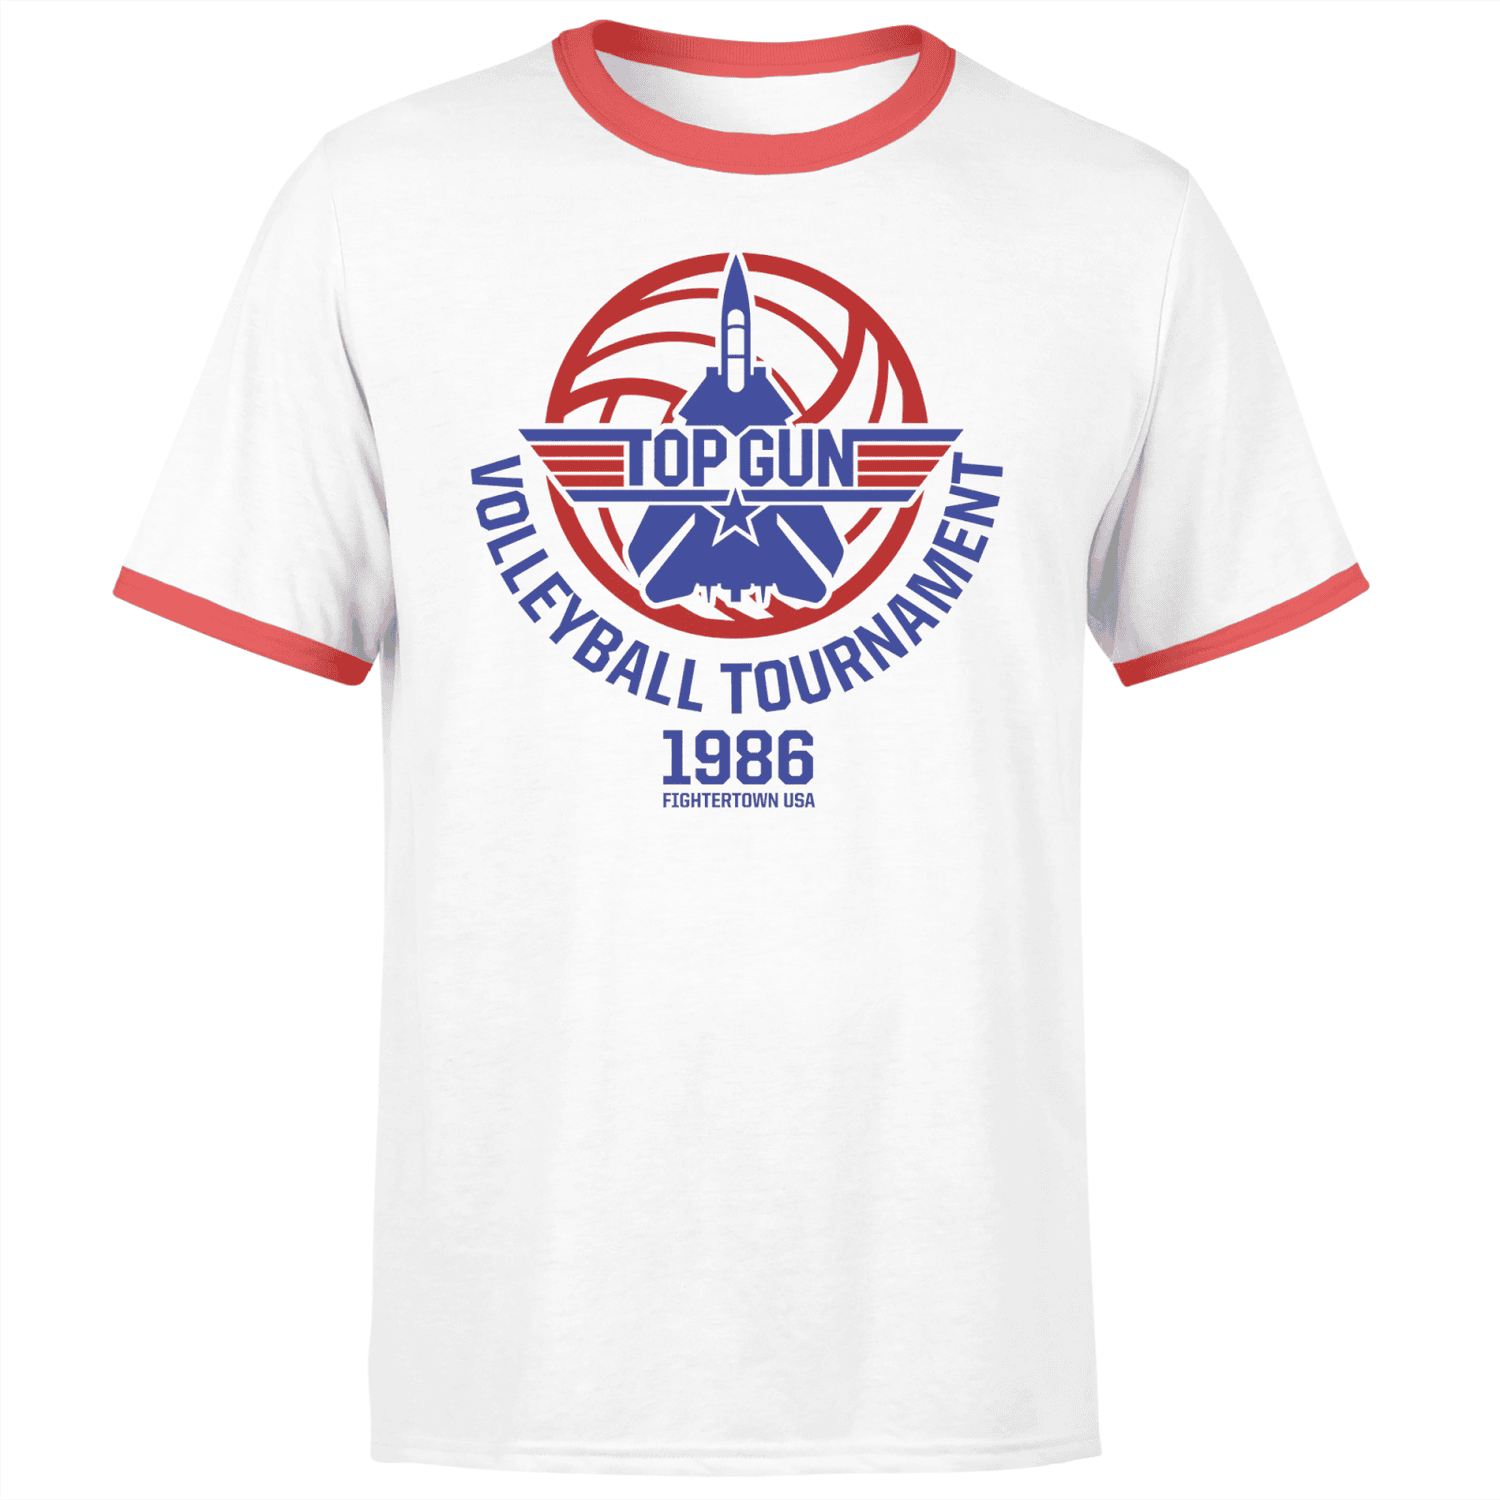 Camiseta anular unisex Volleyball Tournament de Top Gun - Blanco/ Rojo